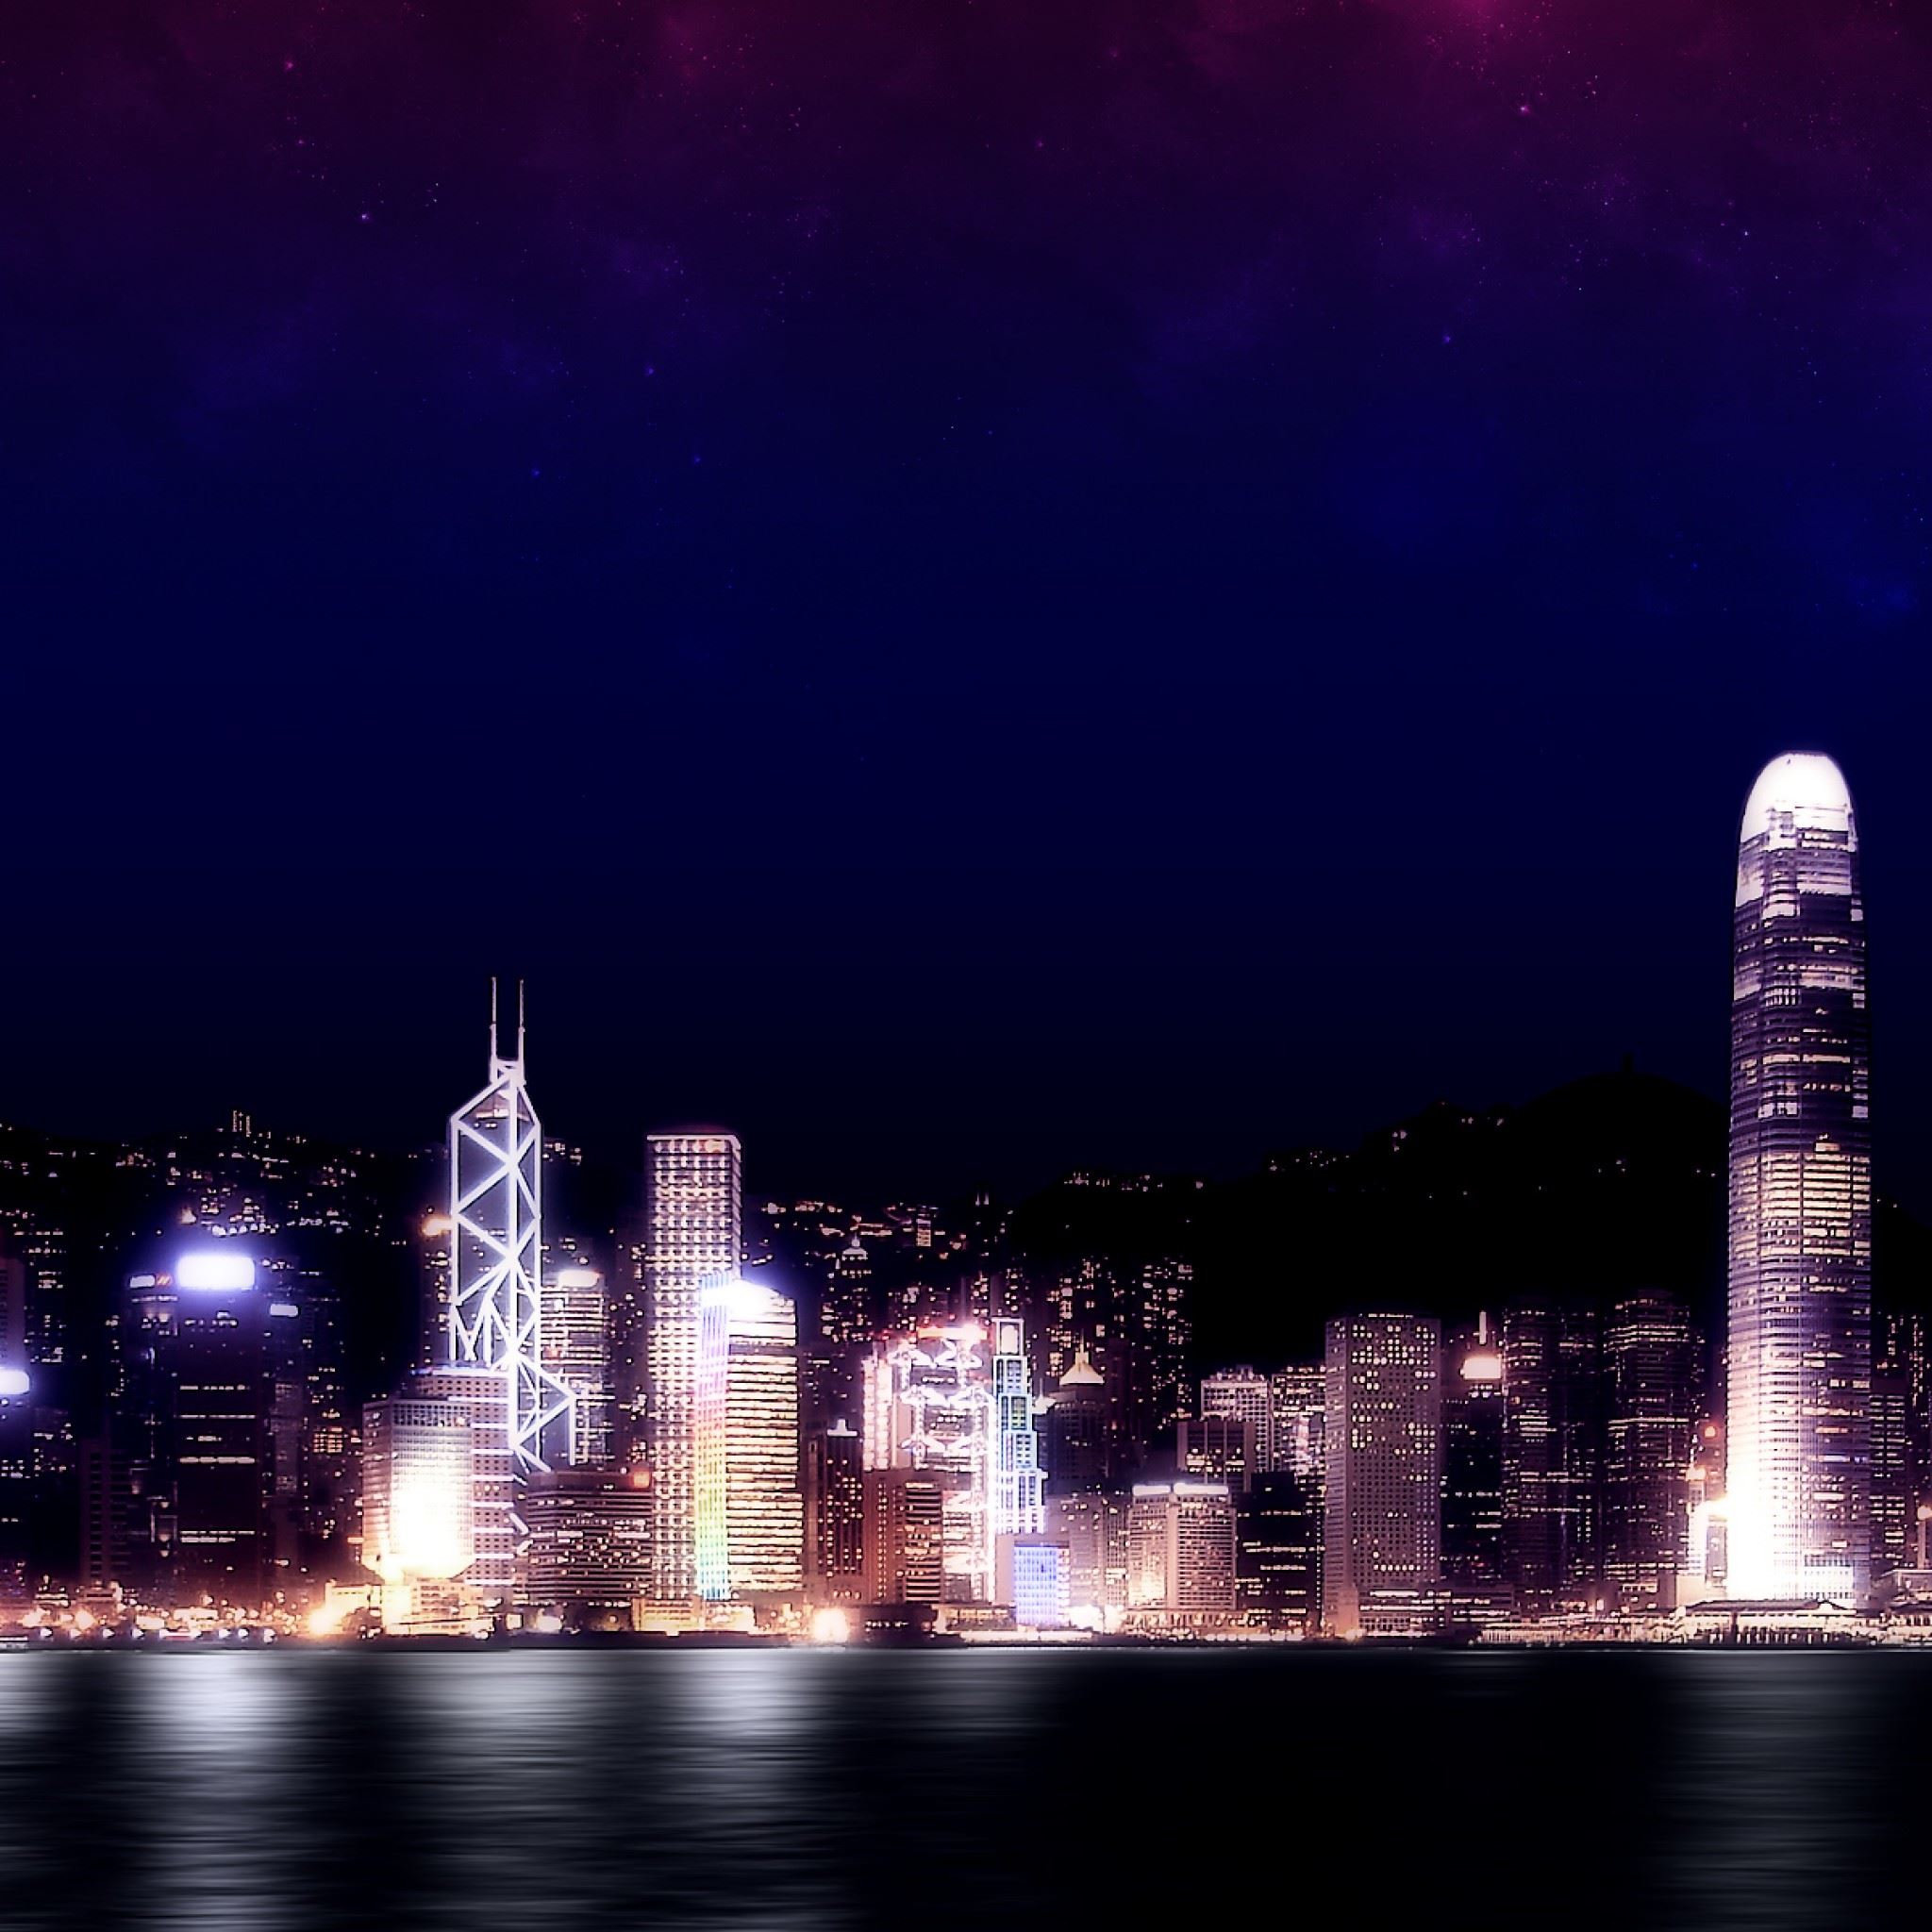 Hong Kong Night Ipad Air Wallpapers Free Download